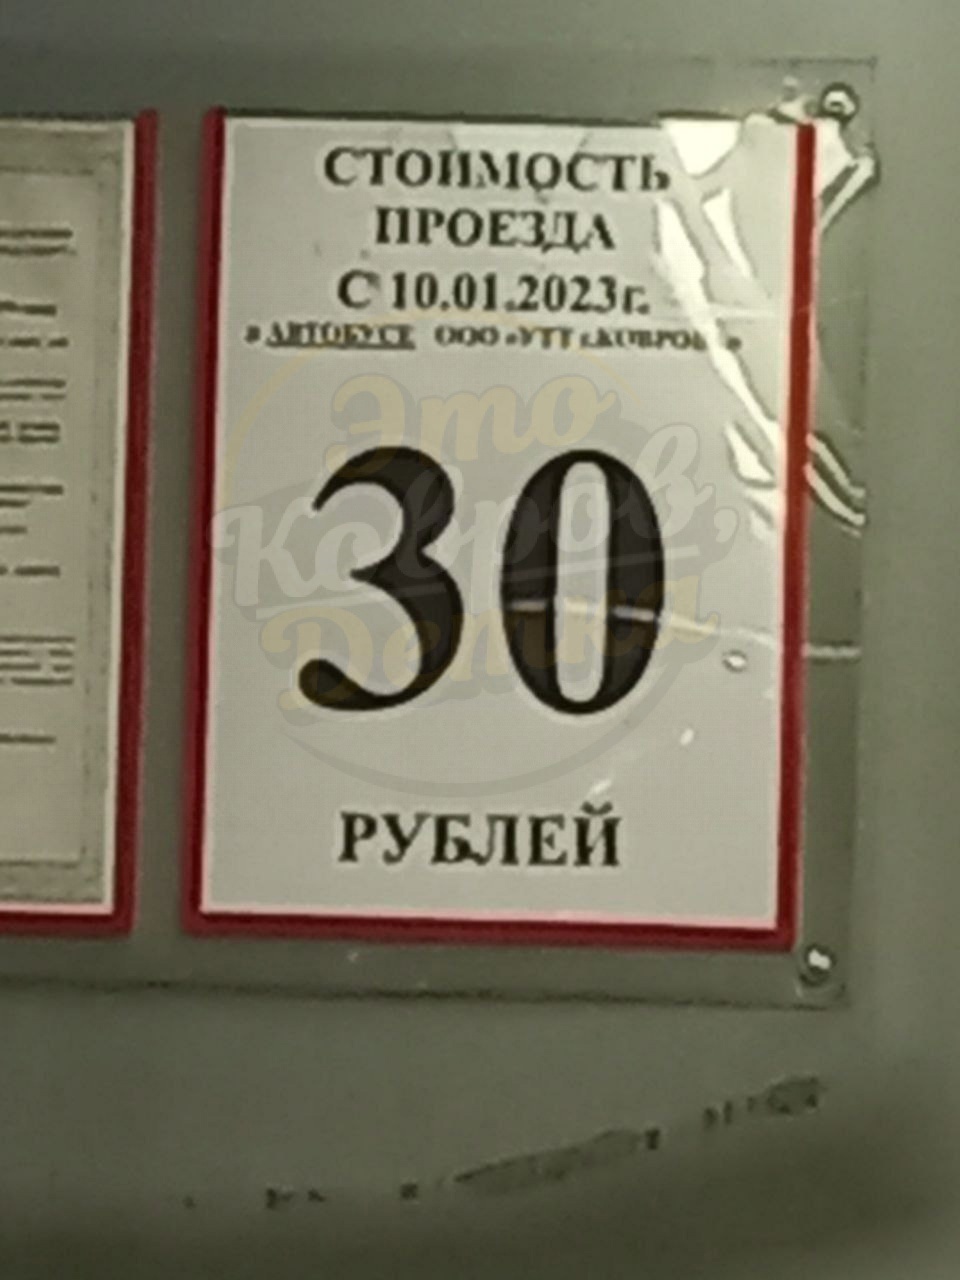 Стоимость проезда 25 рублей. Стоимость проезда 30 рублей картинка. Стоимость проезда 30оублей. Стоимость проезда 35 рублей фото.